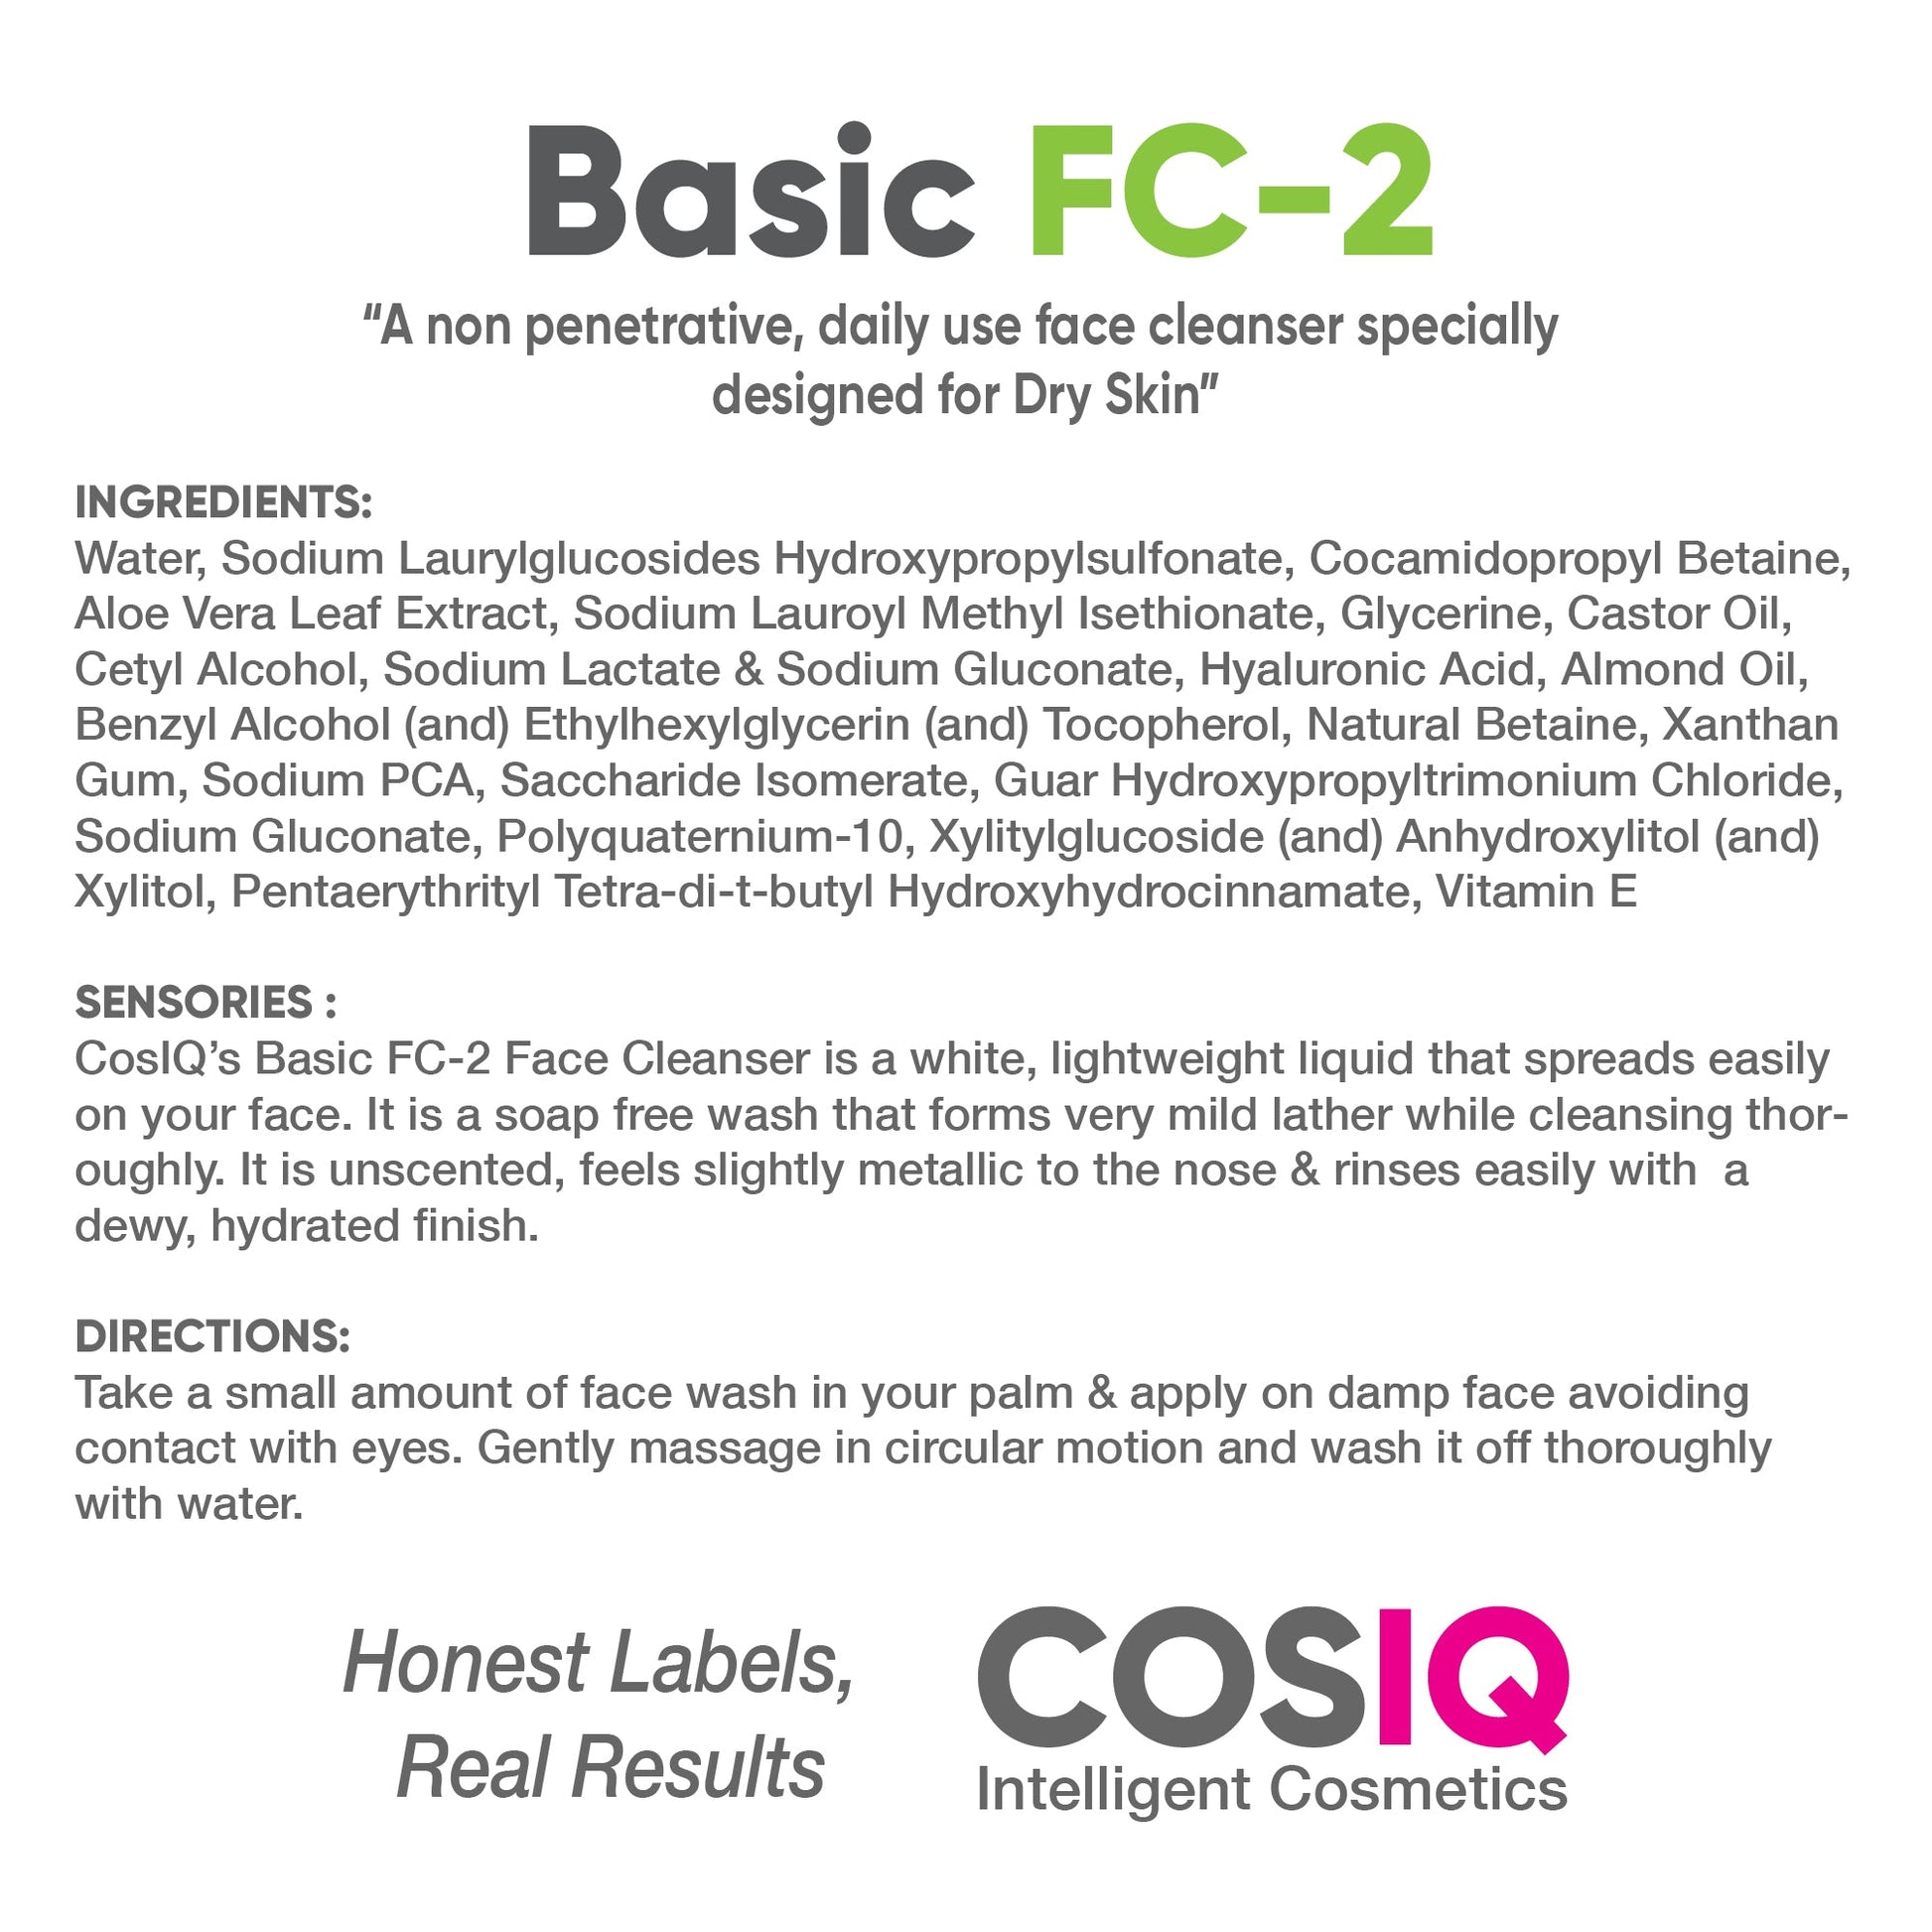 FC-2 Basic Face Cleanser for Dry Skin, 100ml - CosIQ